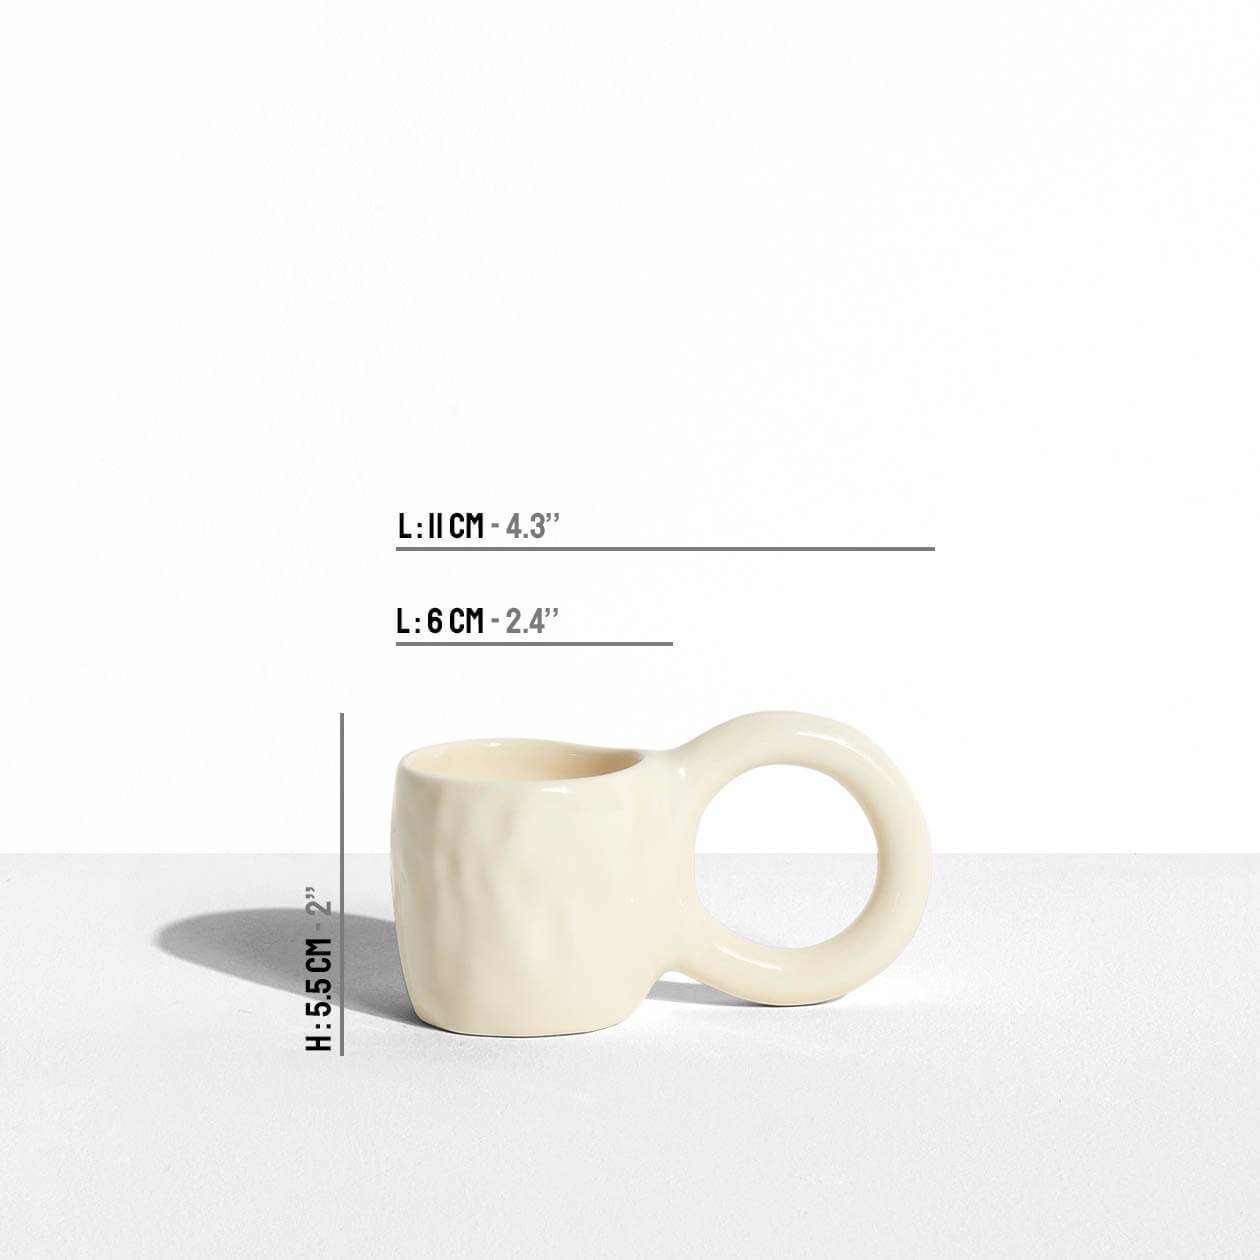 Donut Espresso Cup - Vanilla - Pia Chevalier for Petite Friture - dimensions